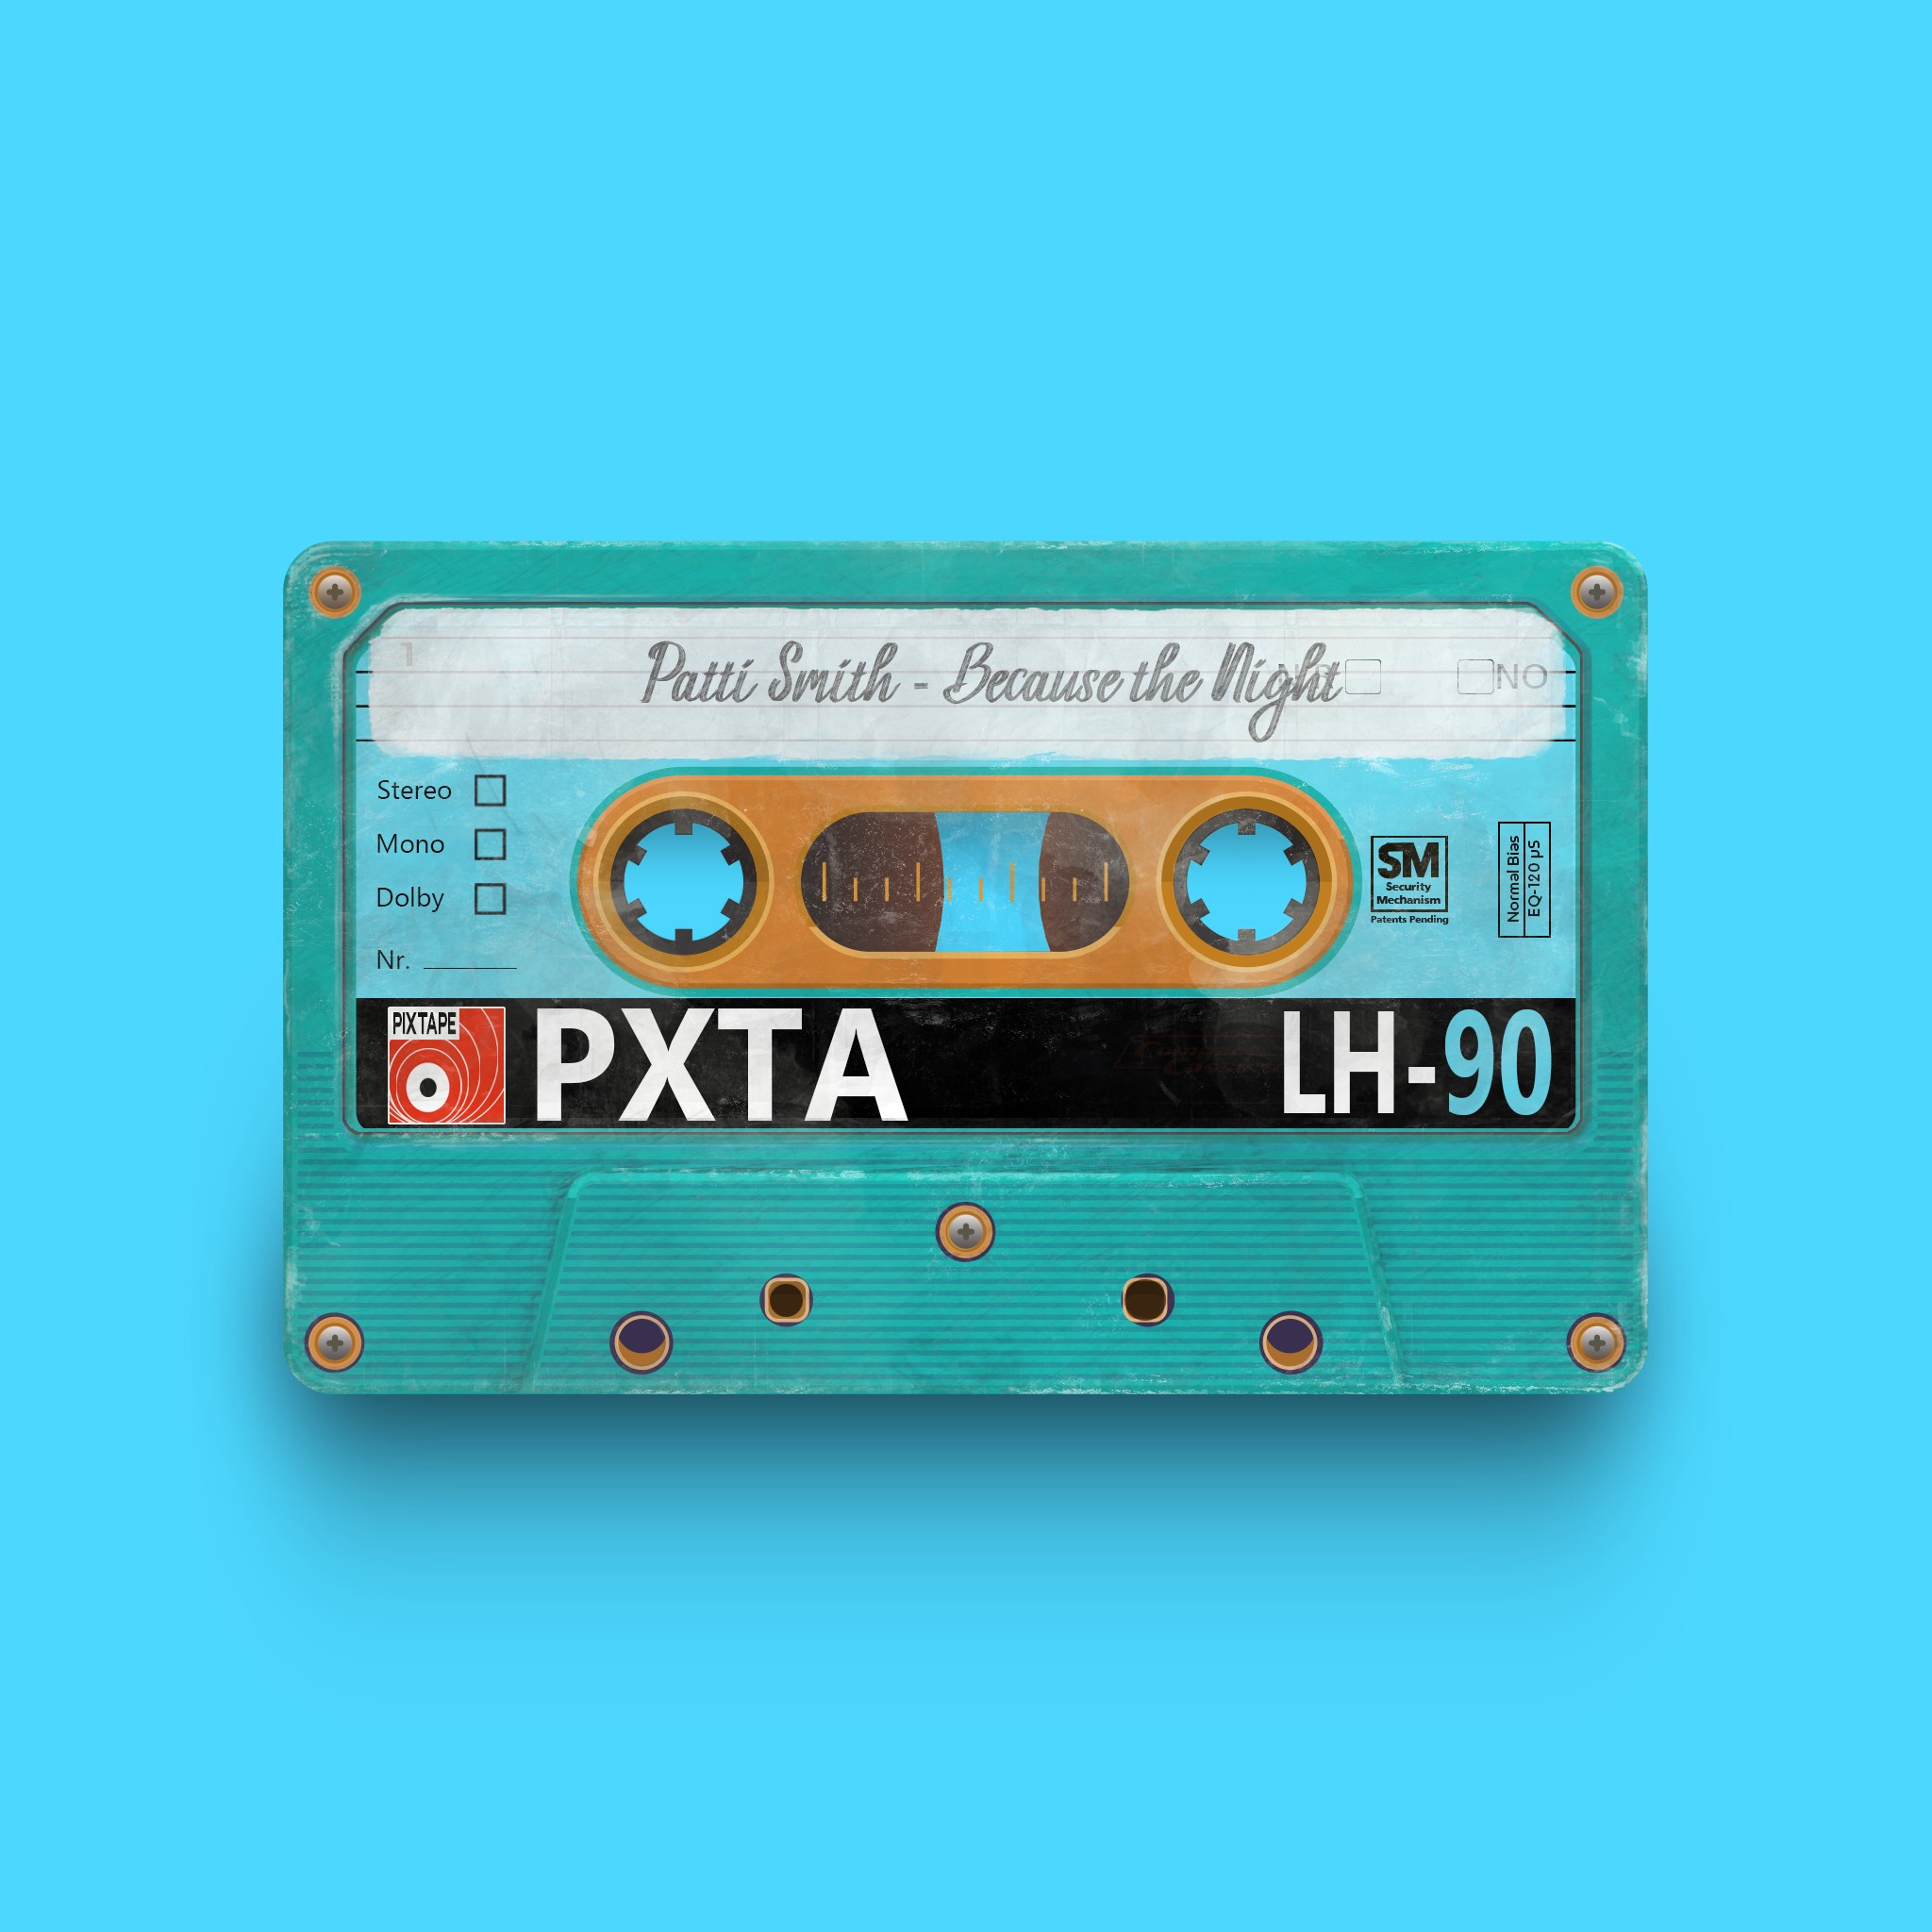 PixTape #185 | Patti Smith - Because the Night